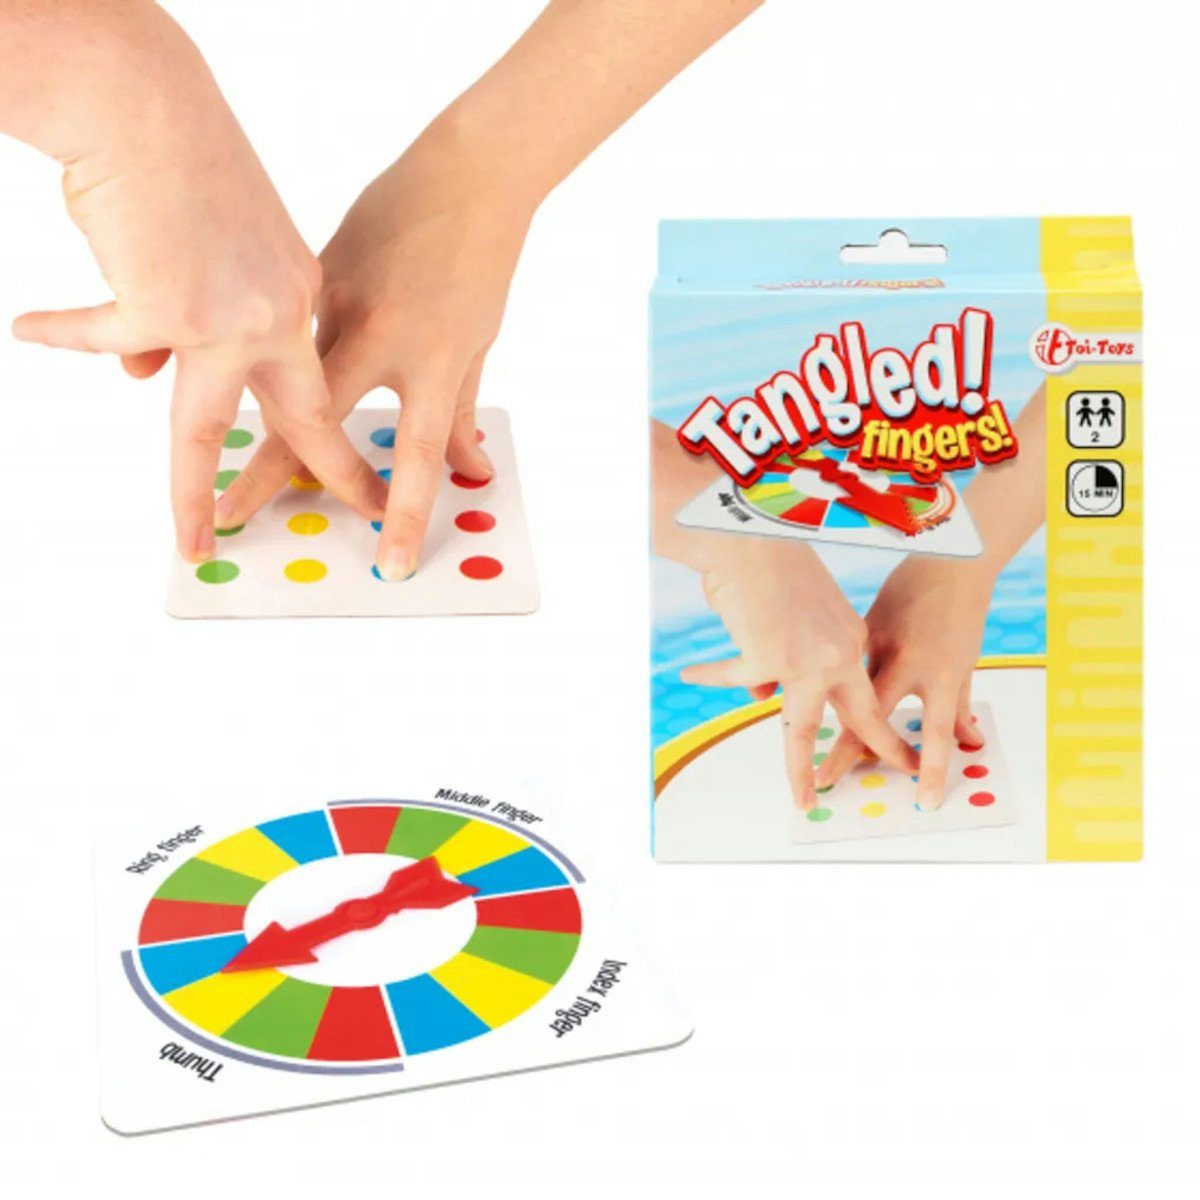 verschlungene Fingers!, Finger Toi-Toys Spiel, Partyspiel Tangled